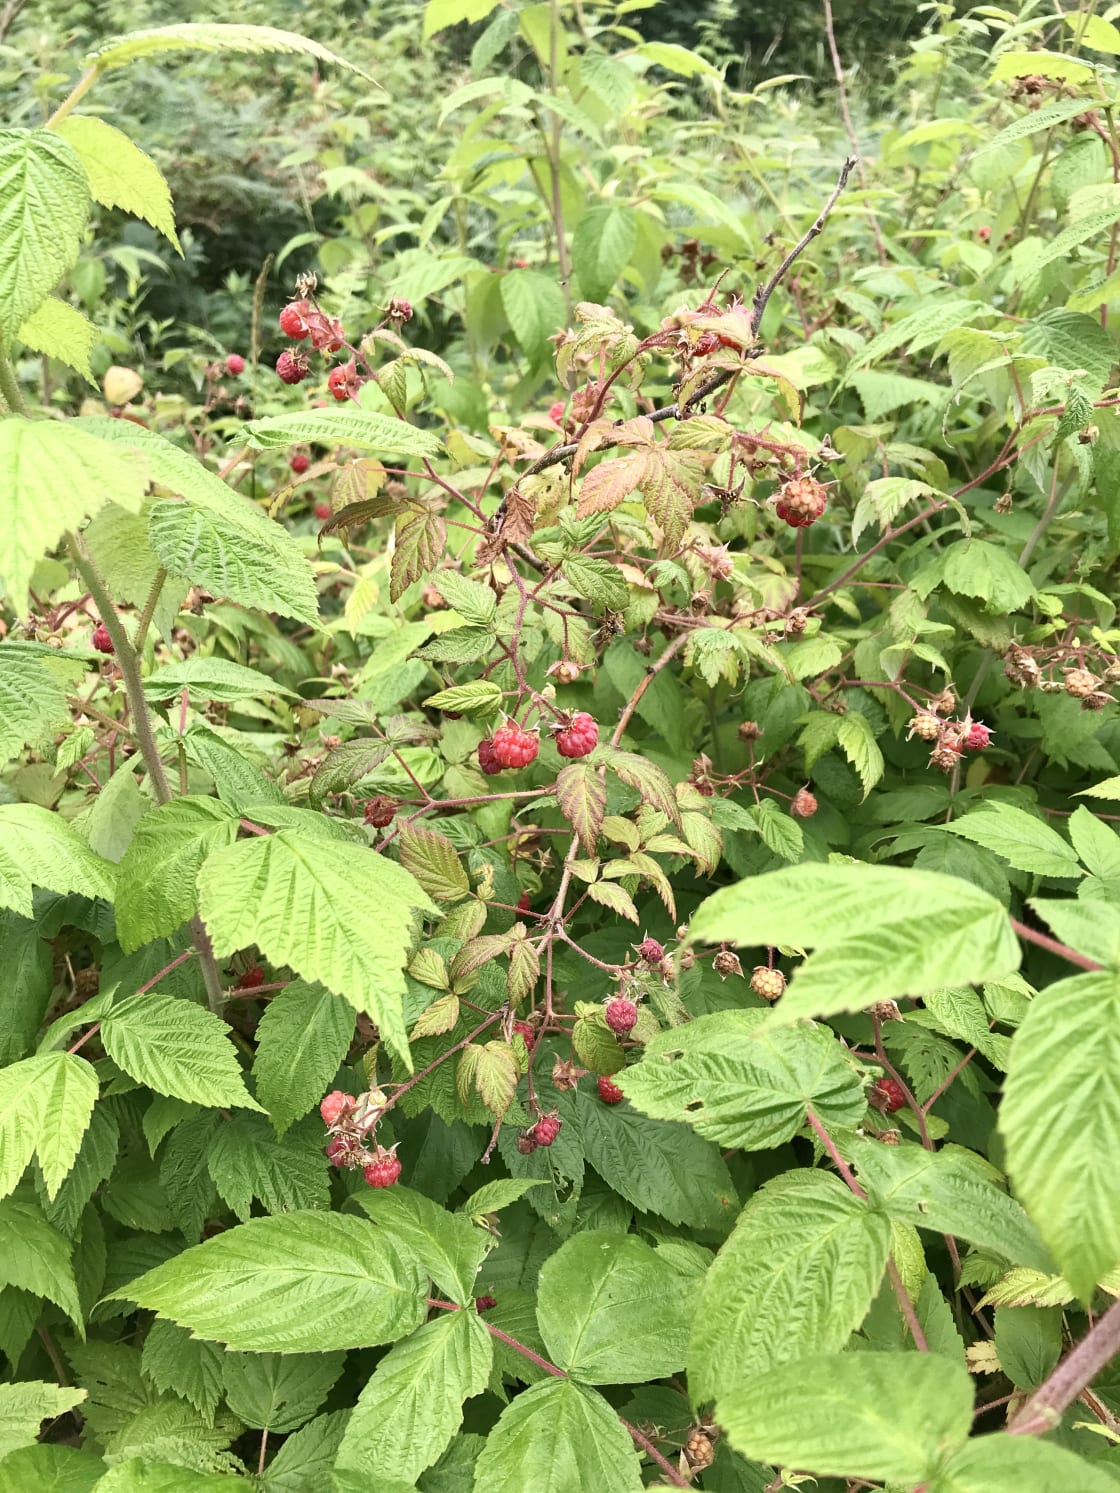 Raspberries in early summer